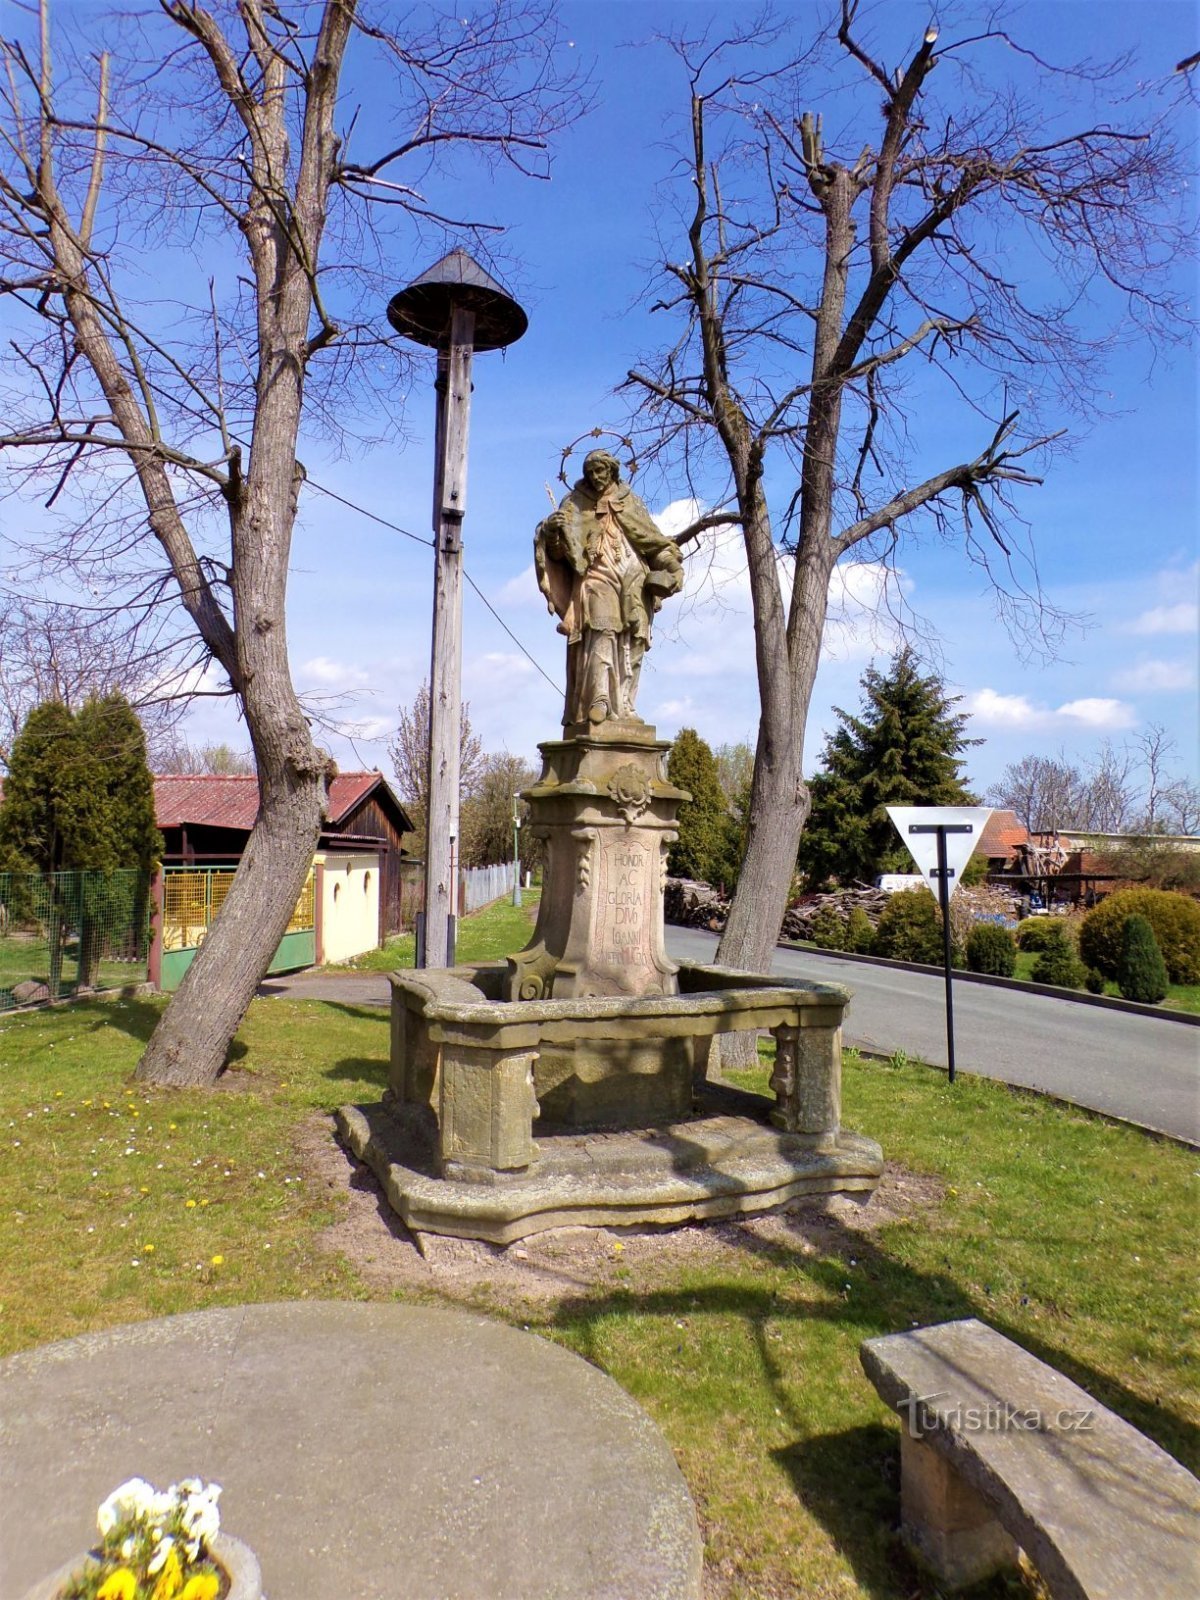 Dzwonnica z figurą św. Jan Nepomucký (Saplava, 30.4.2021)